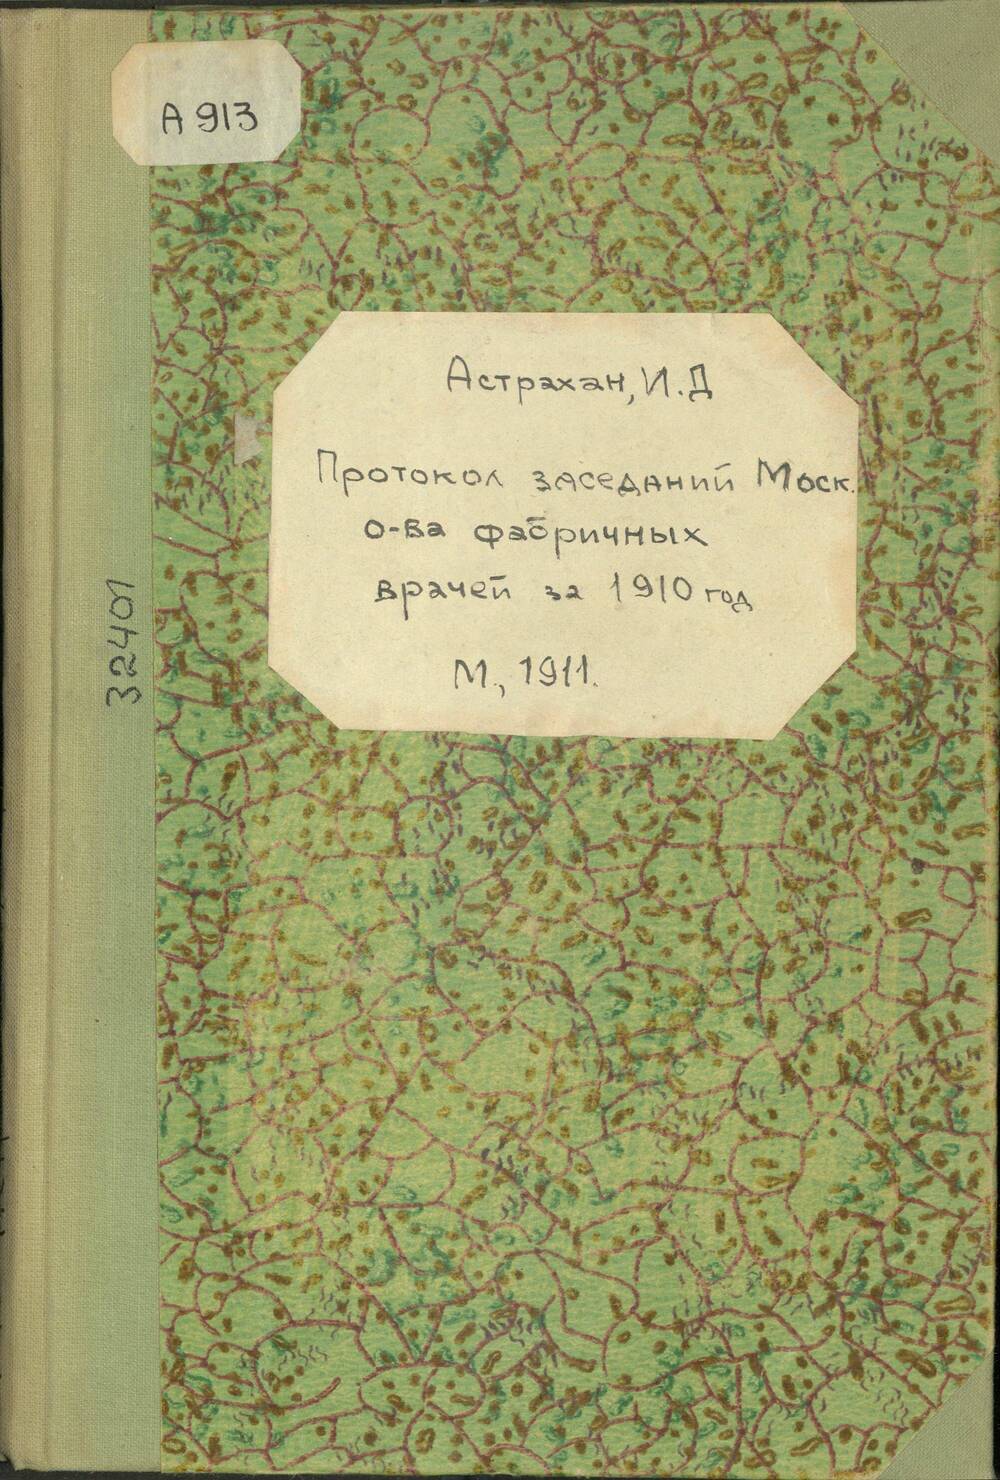 Книга Протокол заседаний Московского общества фабричных врачей за 1910 г.